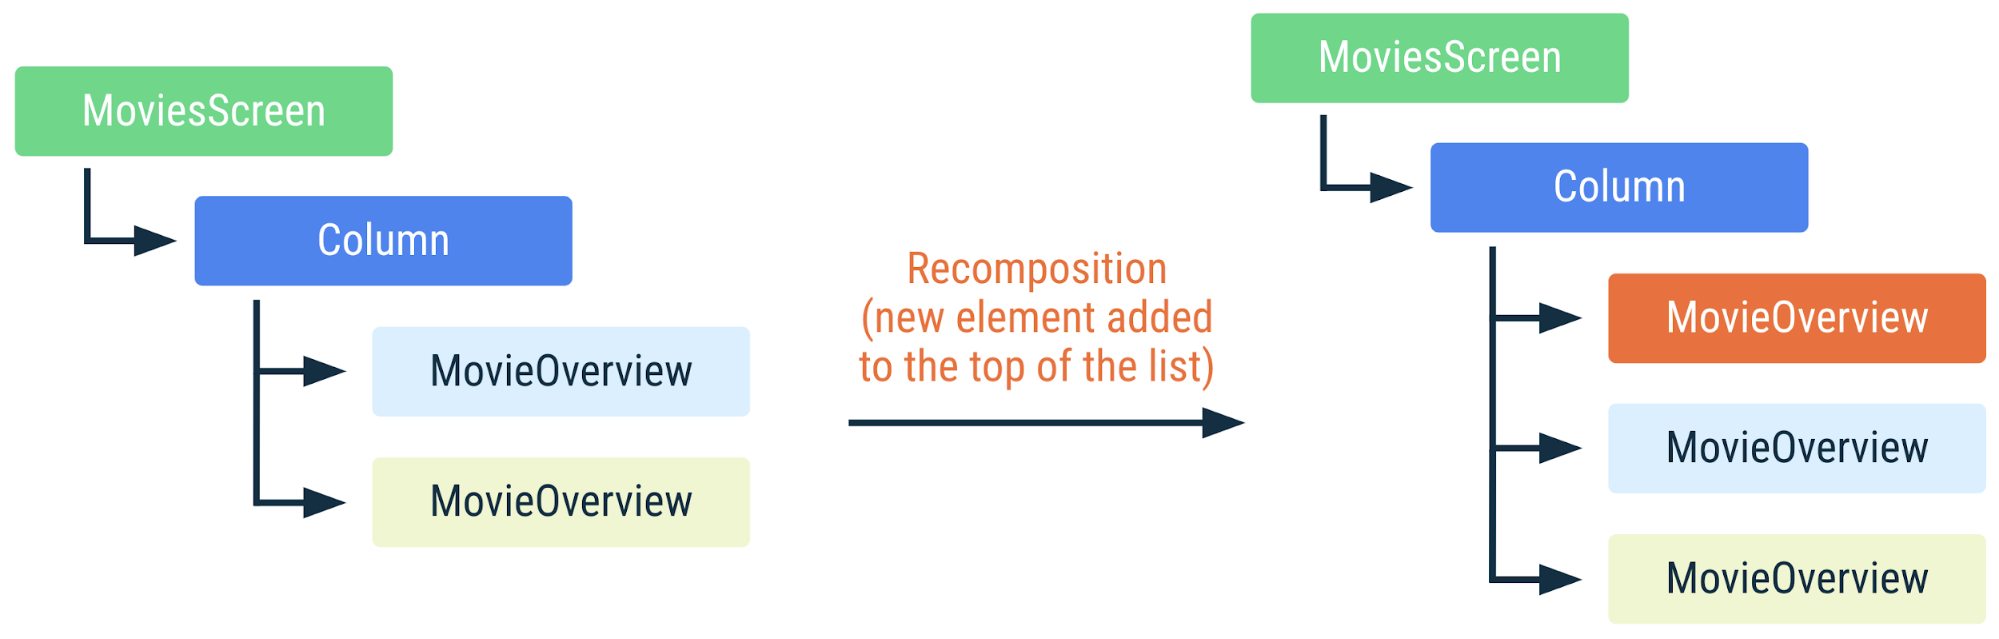 डायग्राम में दिखाया गया है कि अगर सूची में सबसे ऊपर कोई नया एलिमेंट जोड़ा जाता है, तो पिछले कोड को कैसे फिर से लिखा जाता है. आइटम की पहचान कुंजियों से की जाती है, इसलिए Compose को पता है कि उन्हें फिर से नहीं लिखना है, भले ही उनकी पोज़िशन बदल गई हो.